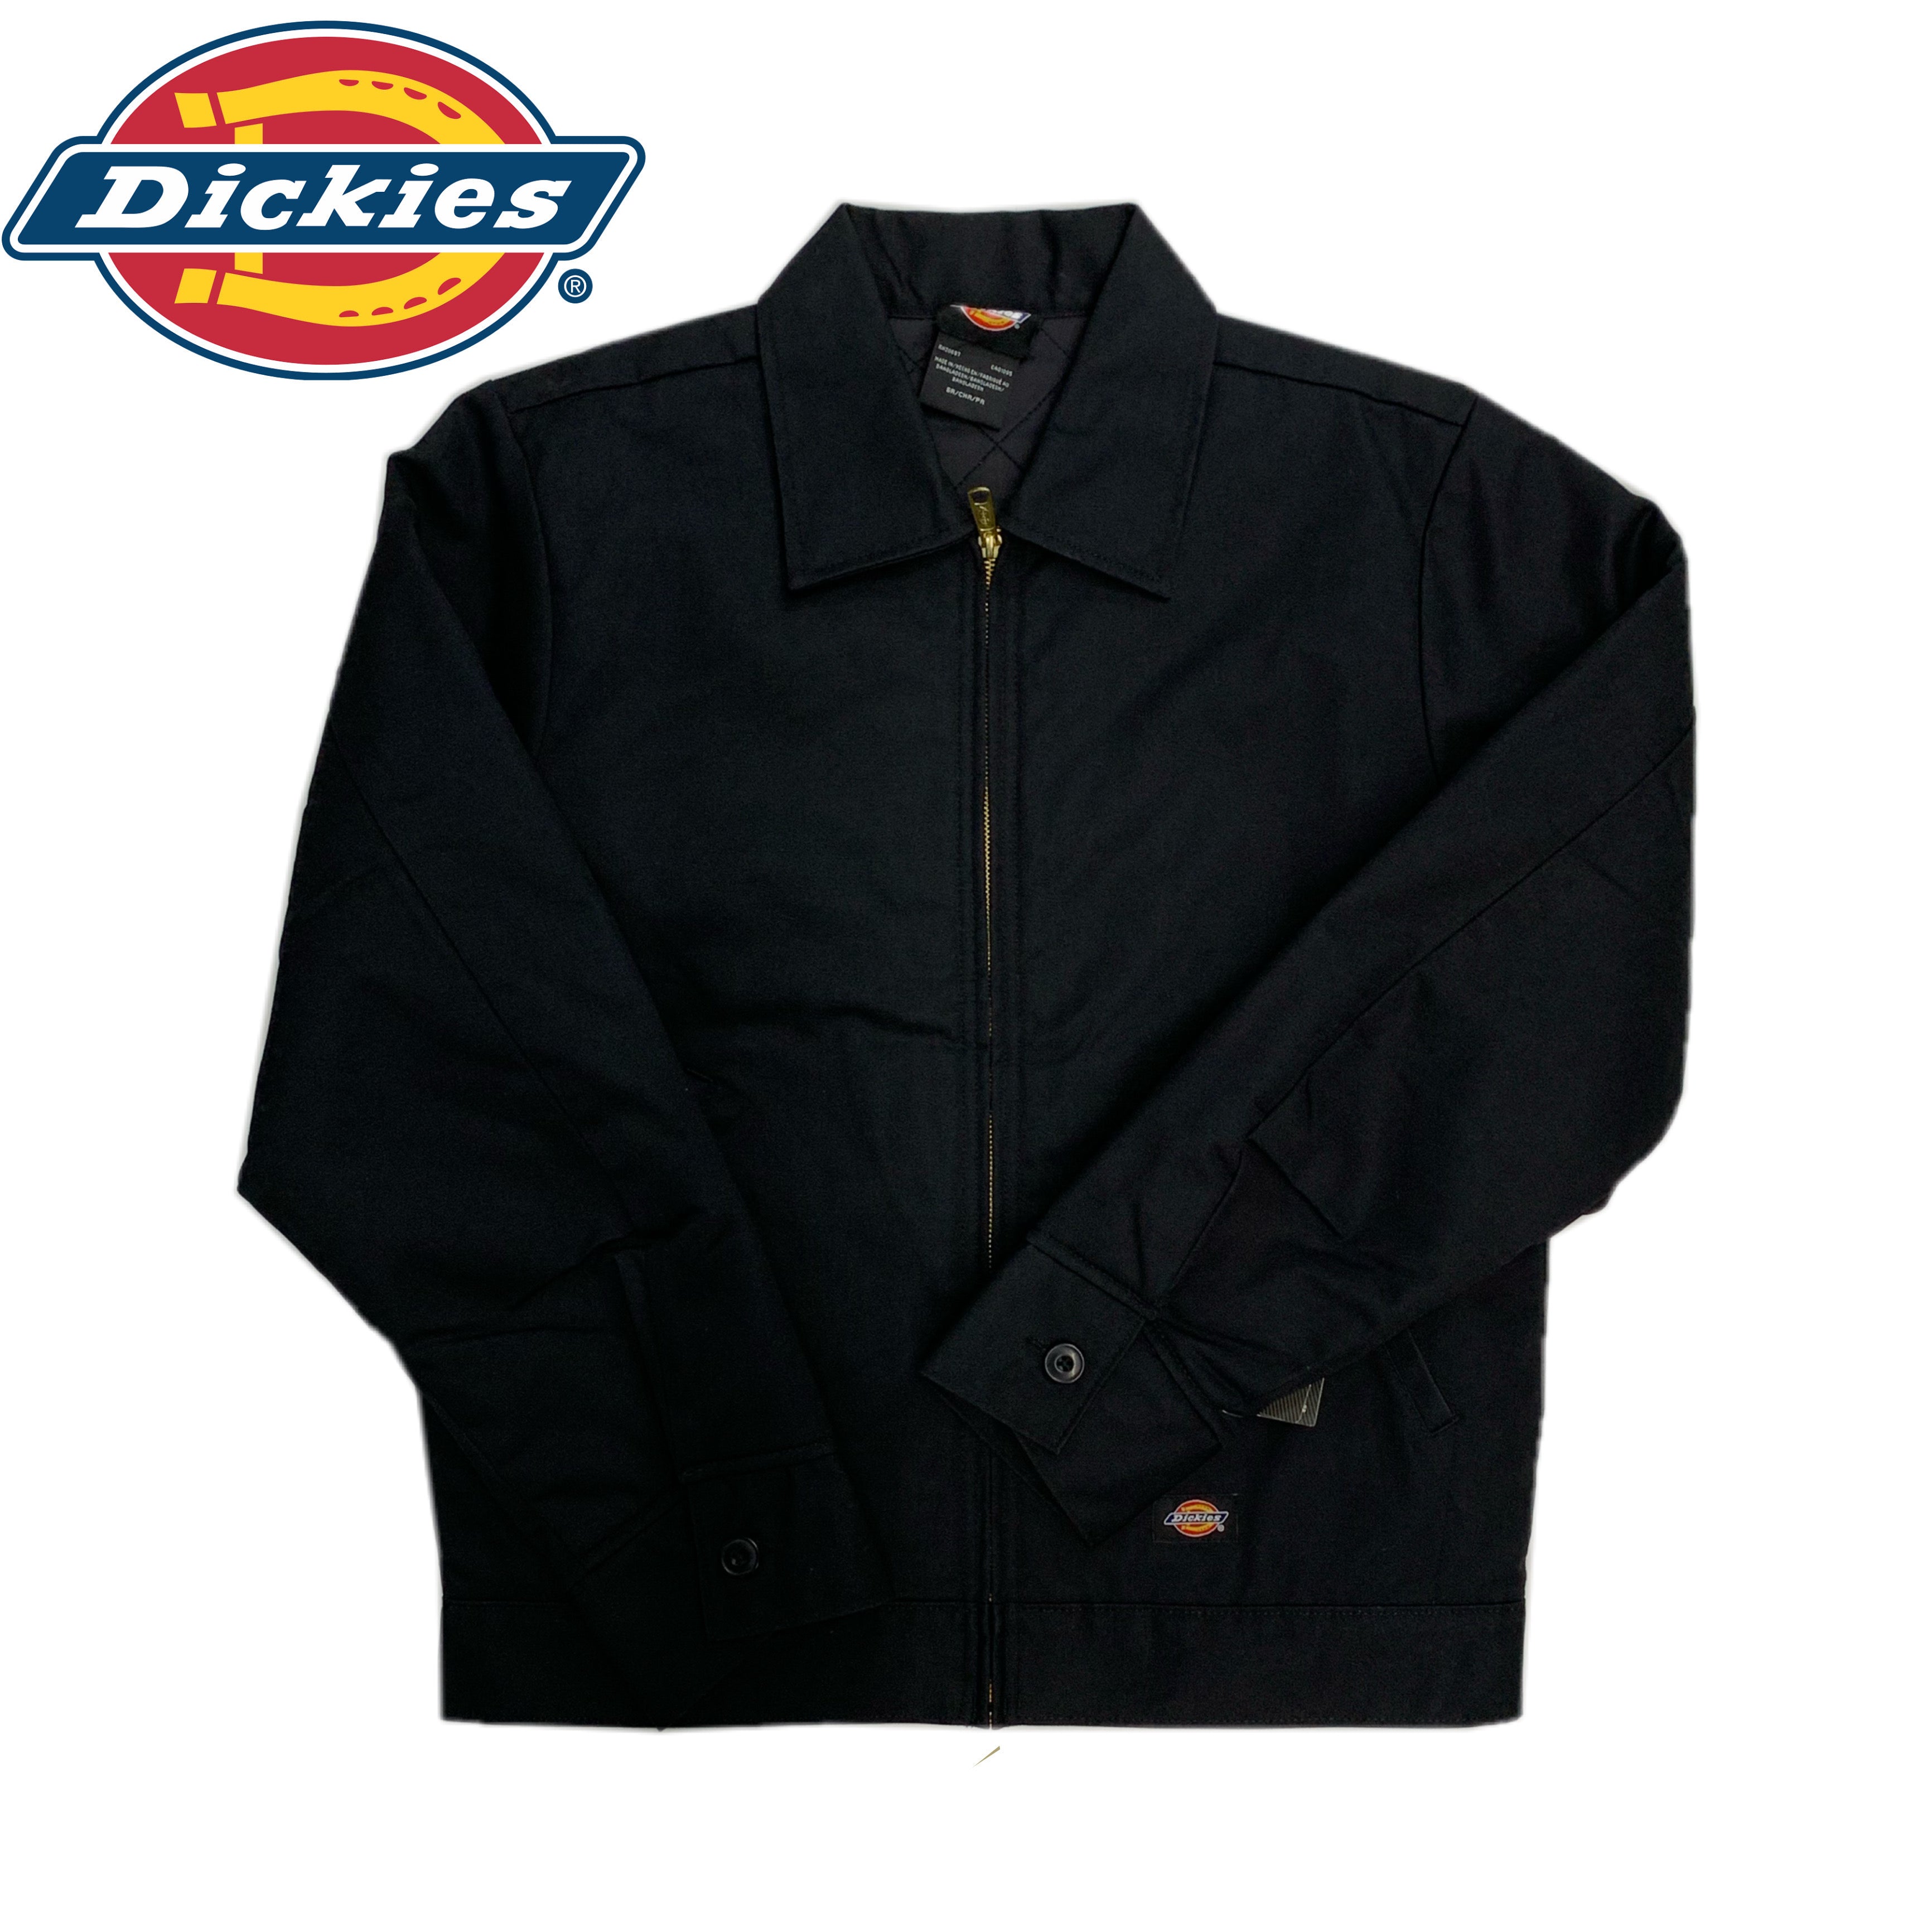 Dickies Work Jacket